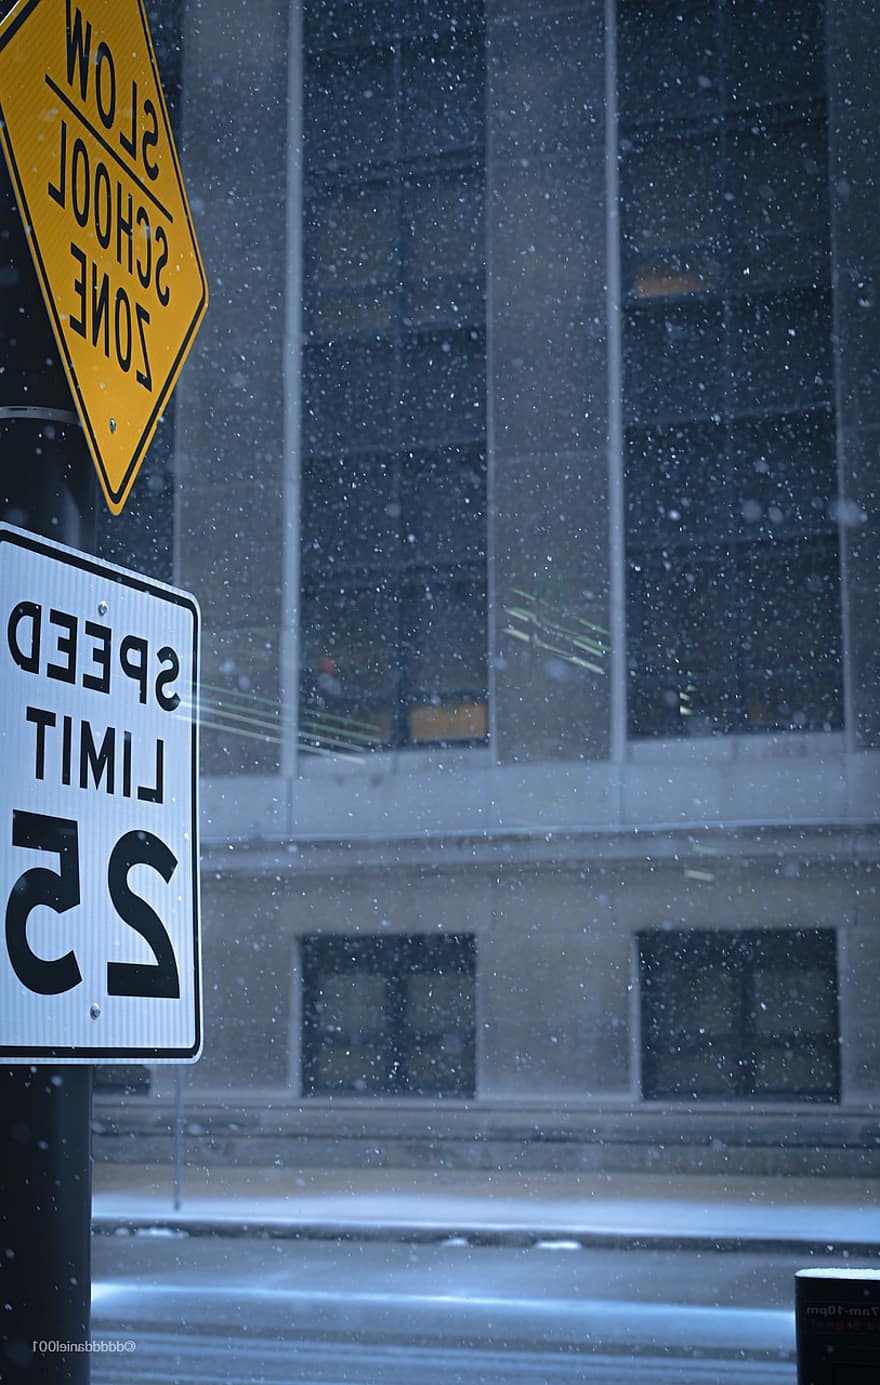 สัญญาณ, ถนน, หิมะ, ฤดูหนาว, ปริมาณหิมะ, เครื่องหมายจราจร, ป้ายถนน, จำกัด ความเร็ว, เขตโรงเรียน, กลางแจ้ง, สภาพอากาศ